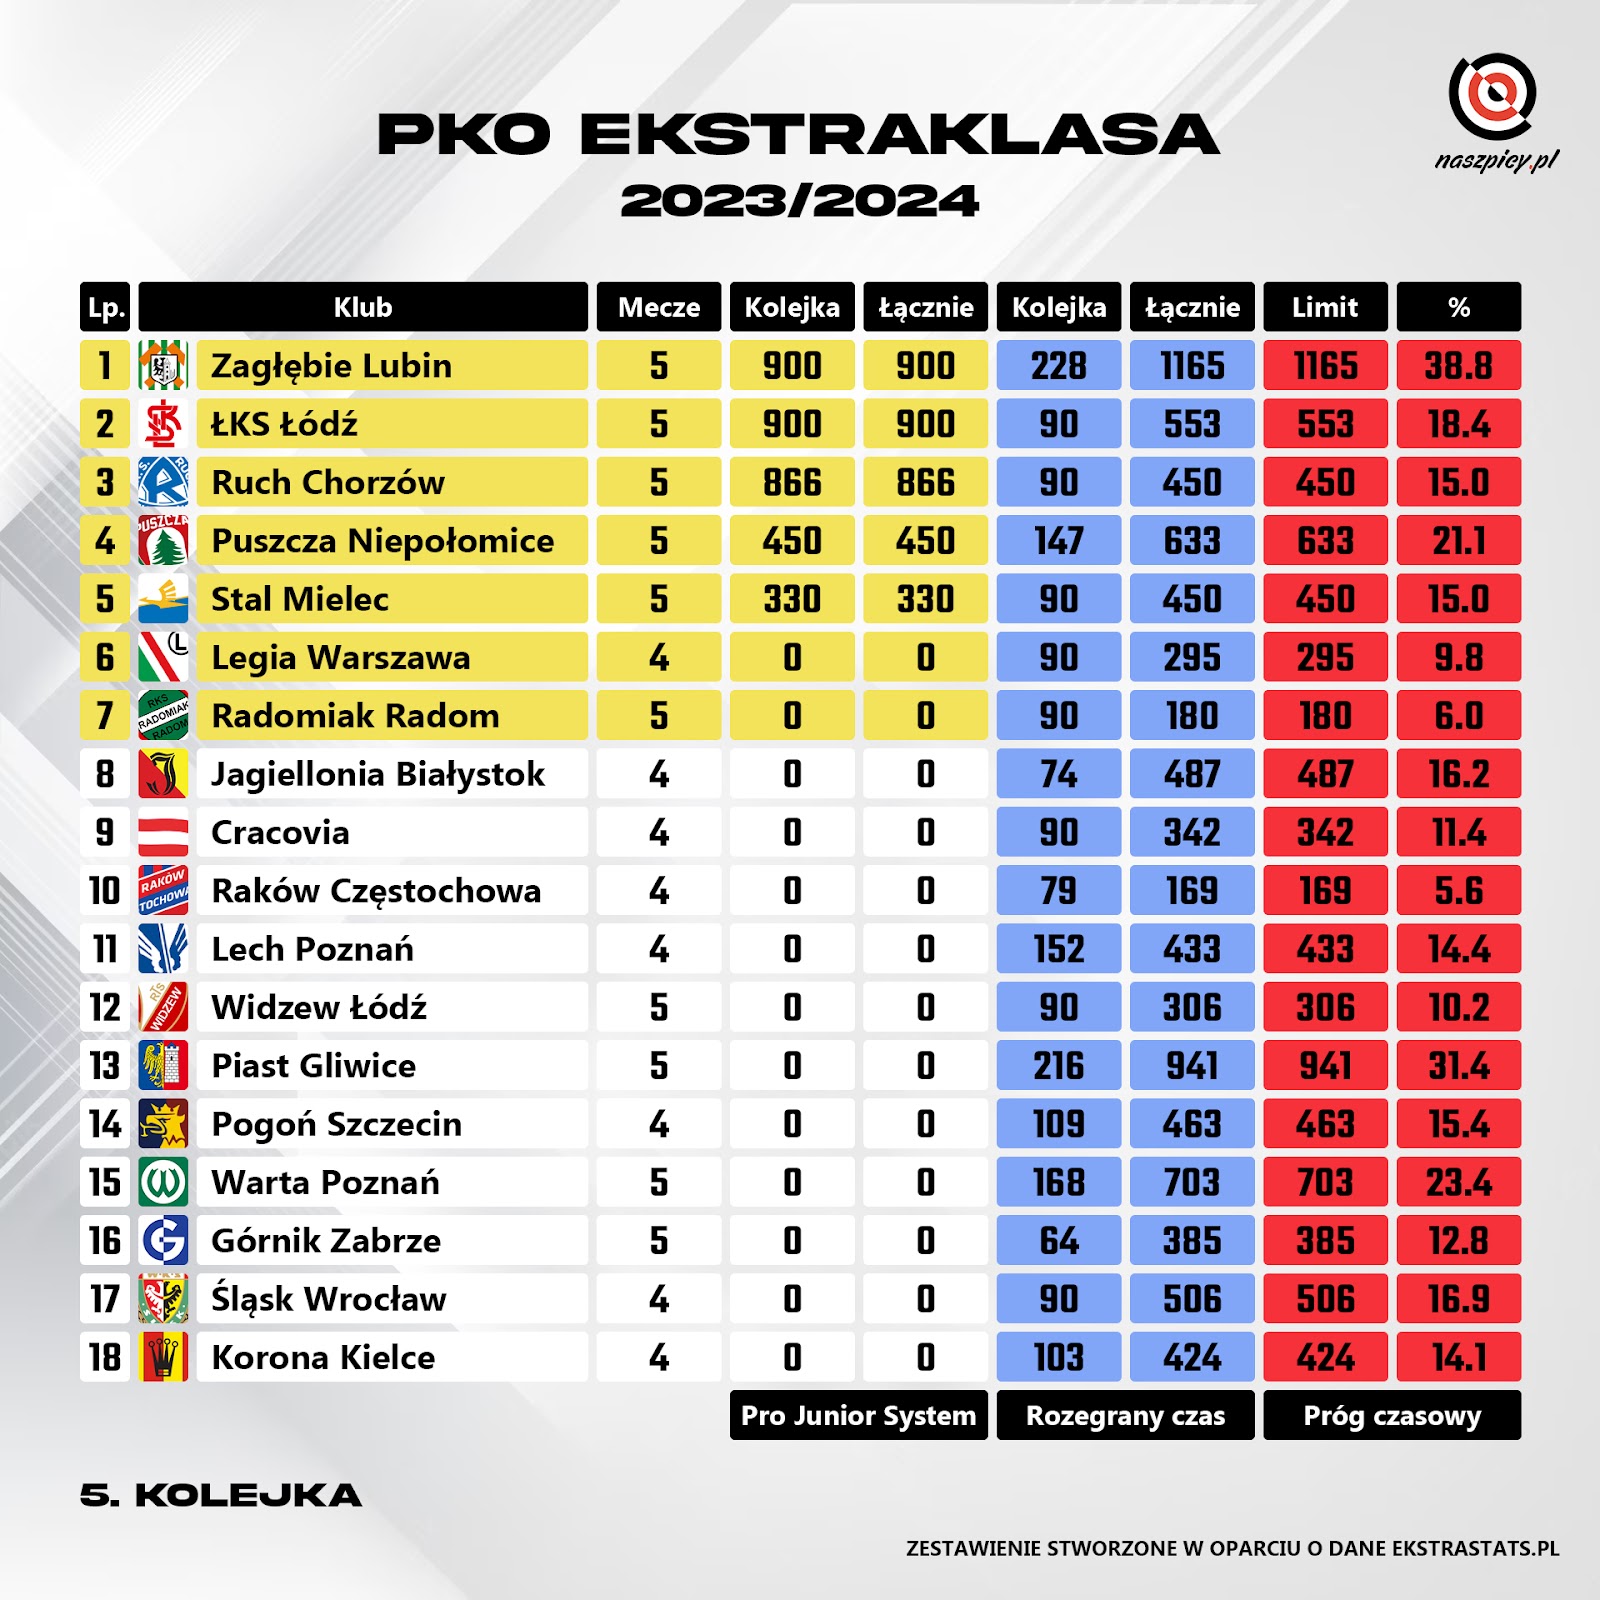 Klasyfikacja Pro Junior System po 5. kolejce PKO Ekstraklasy 2023/24<br><br>Źródło: Opracowanie własne na podstawie ekstrastats.pl<br><br>graf. Bartosz Urban